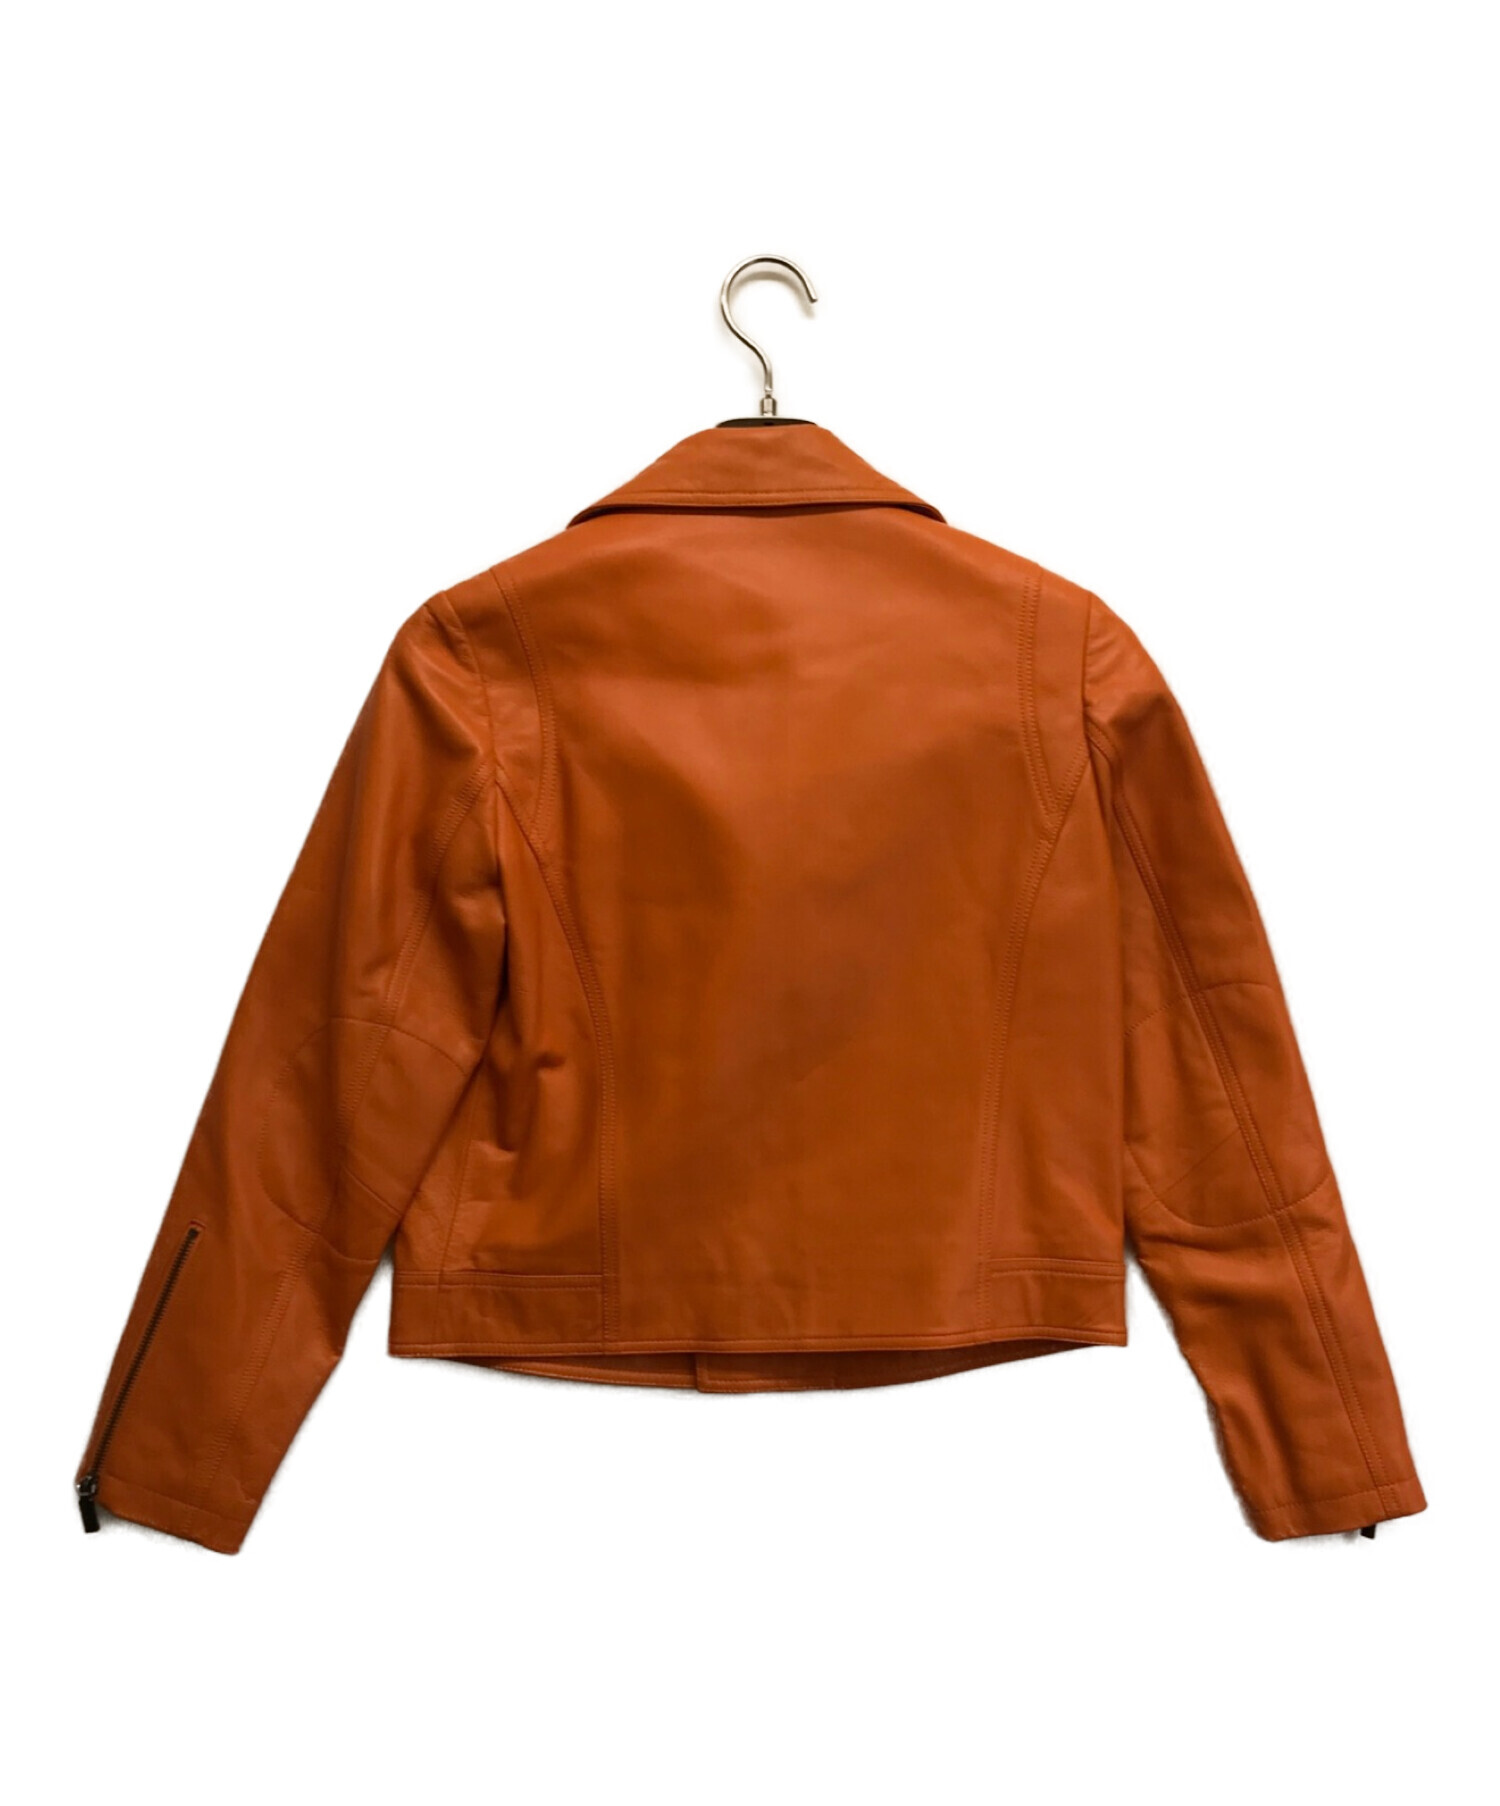 BIJOU (ビジュー) ラムレザーWライダースジャケット オレンジ サイズ:S